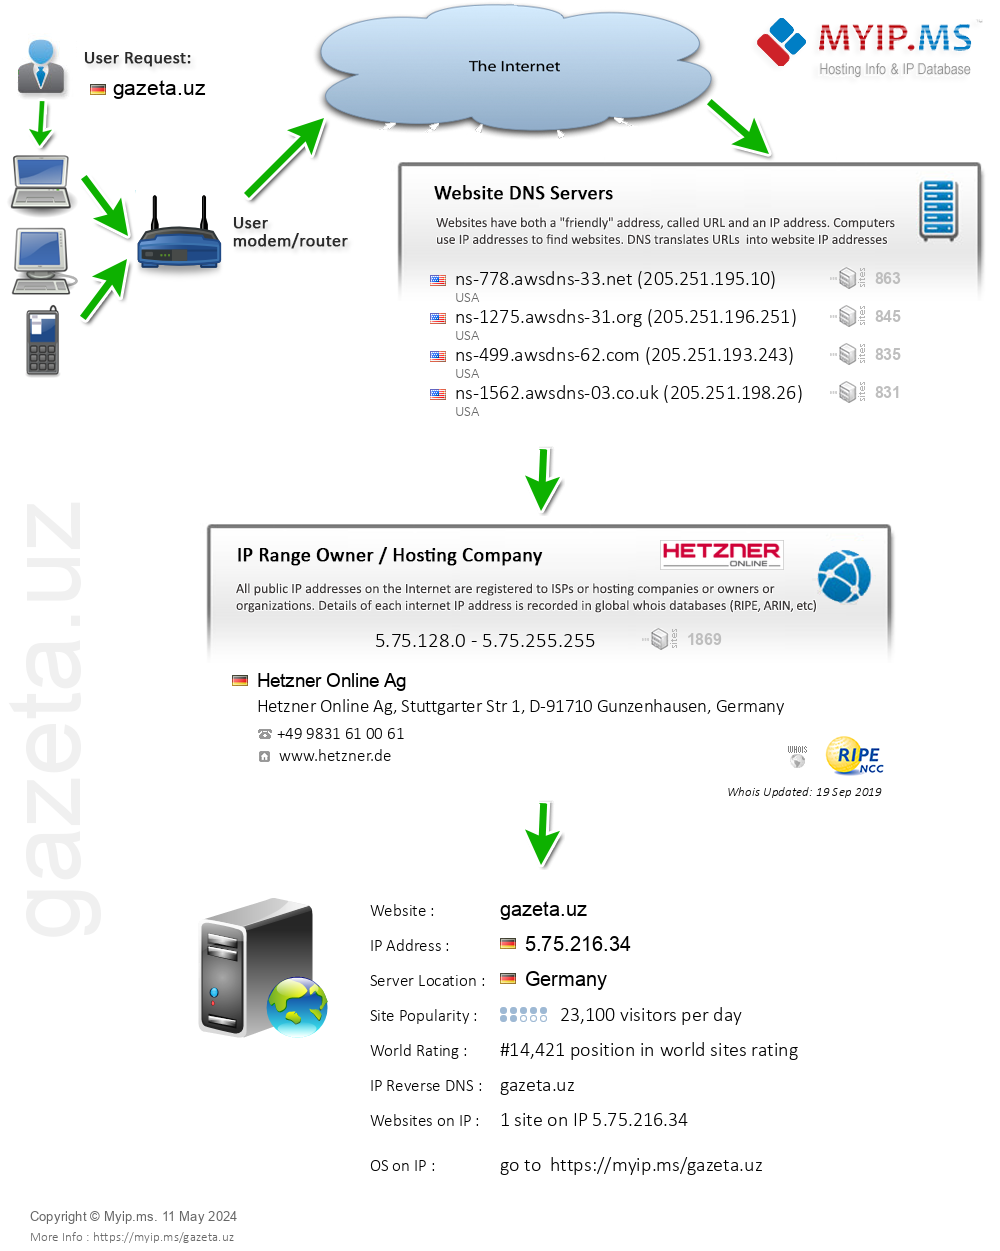 Gazeta.uz - Website Hosting Visual IP Diagram